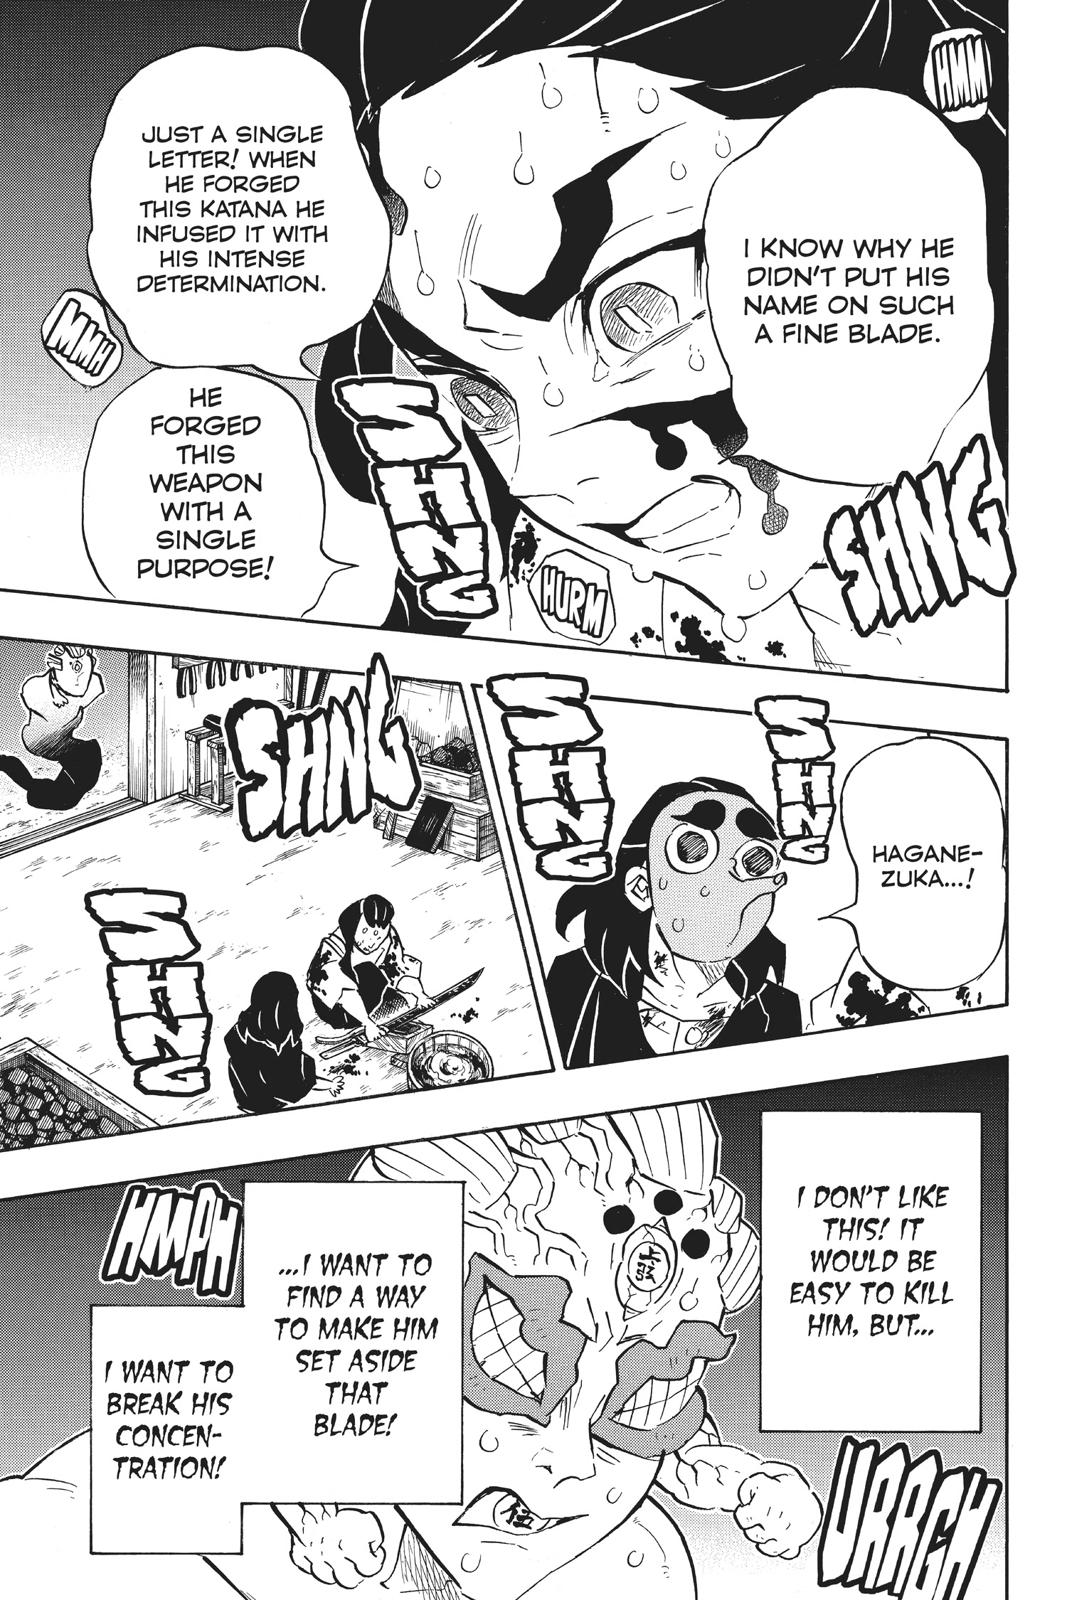 Demon Slayer Manga Manga Chapter - 117 - image 4